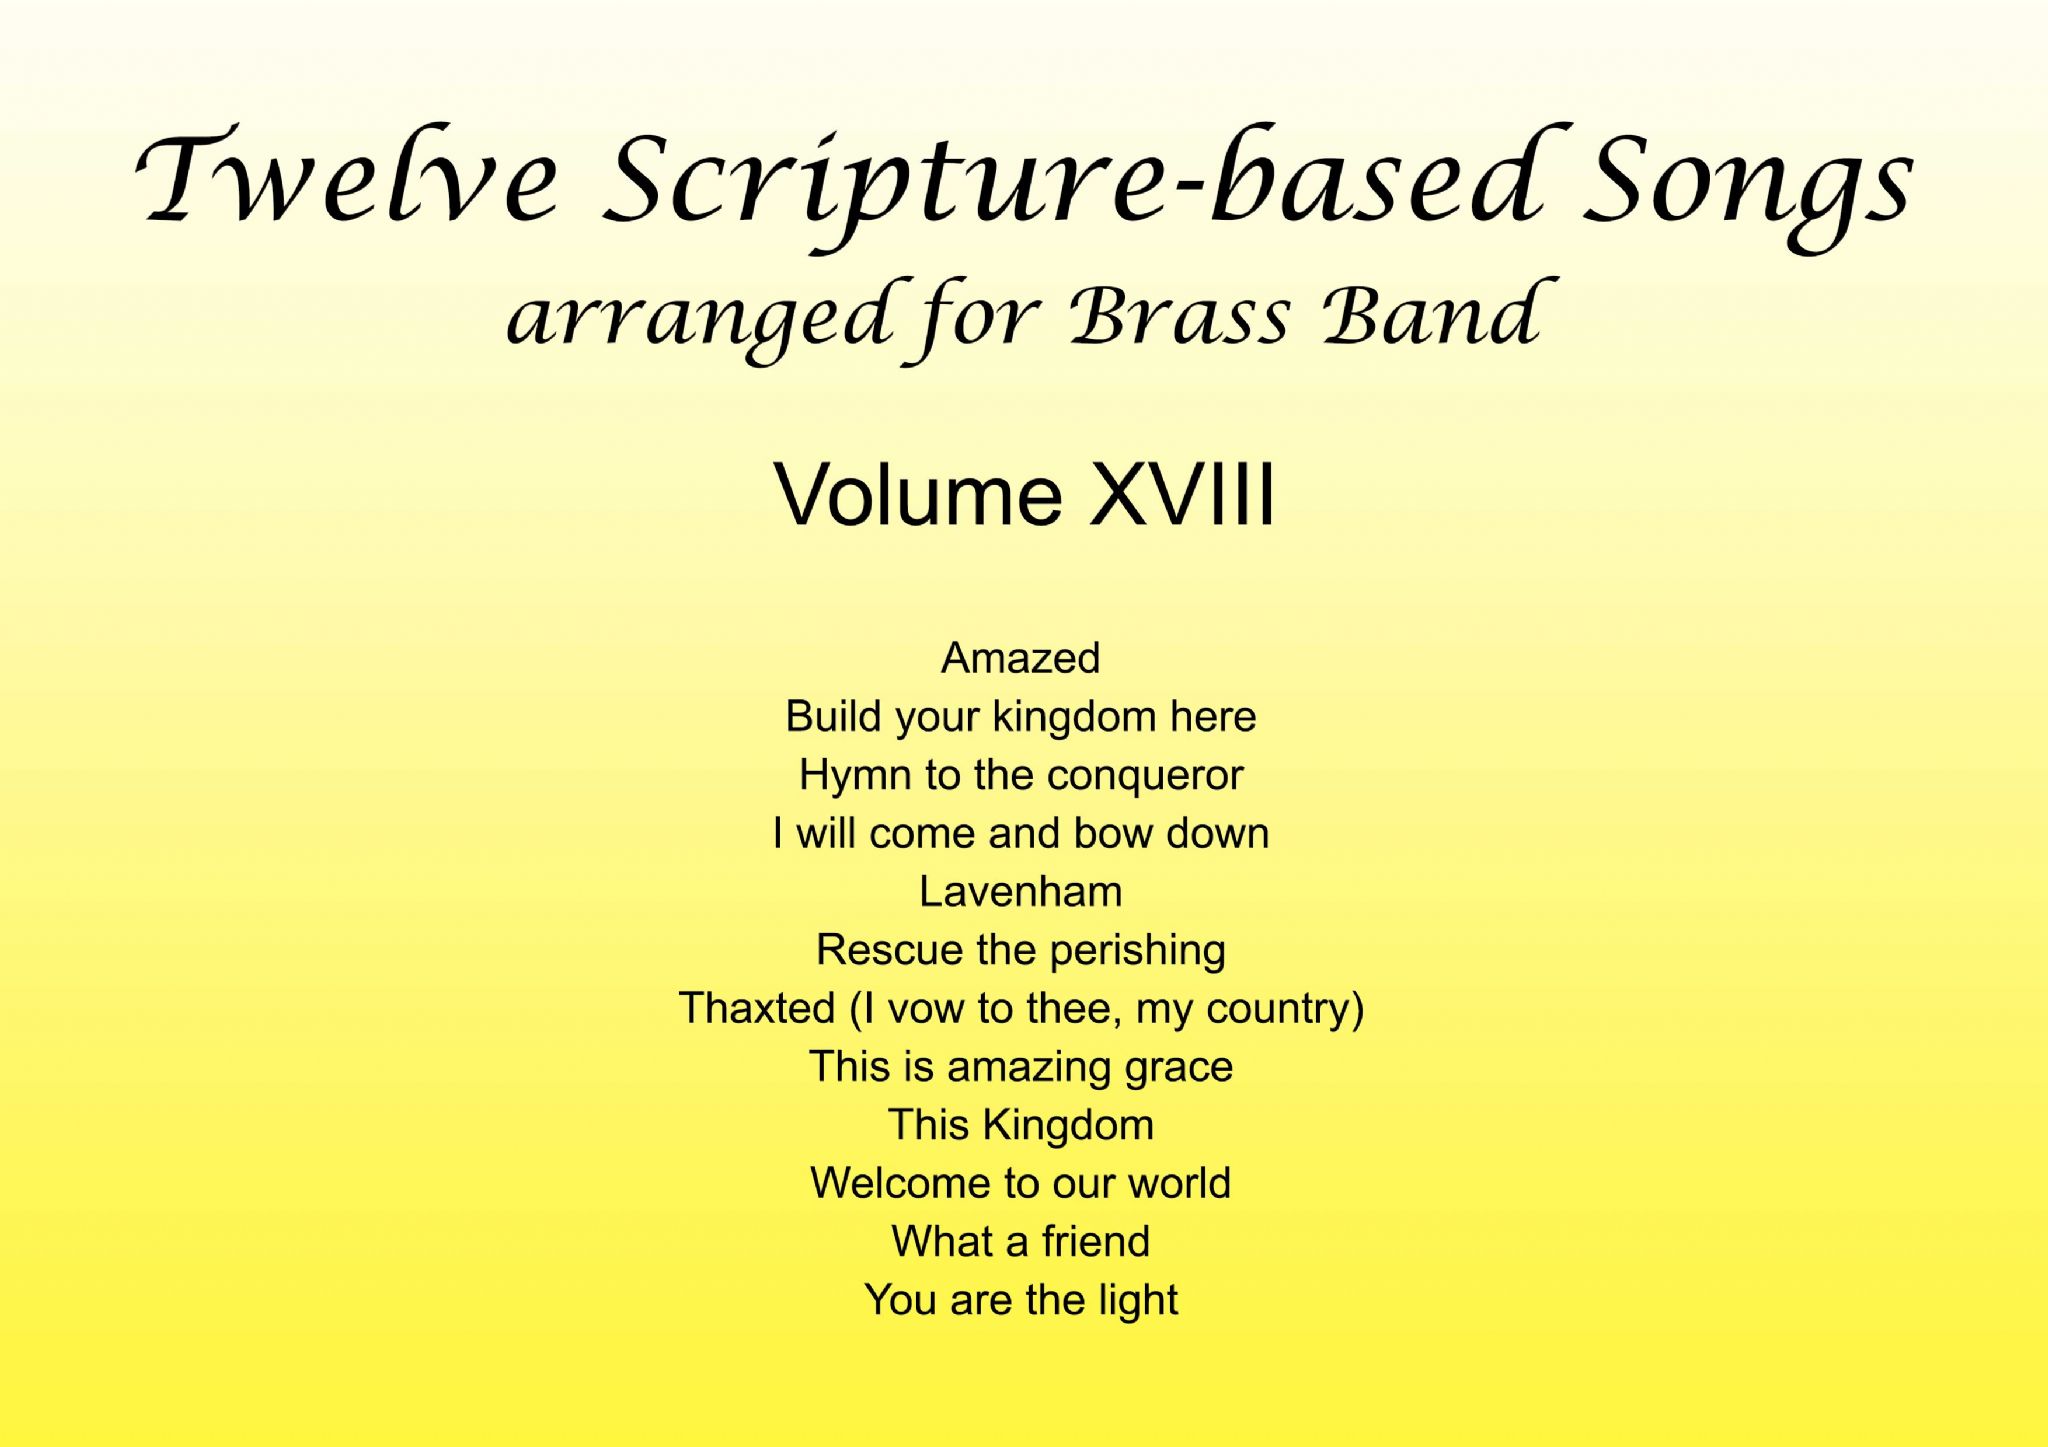 Twelve Scripture-based Songs Volume XVIII